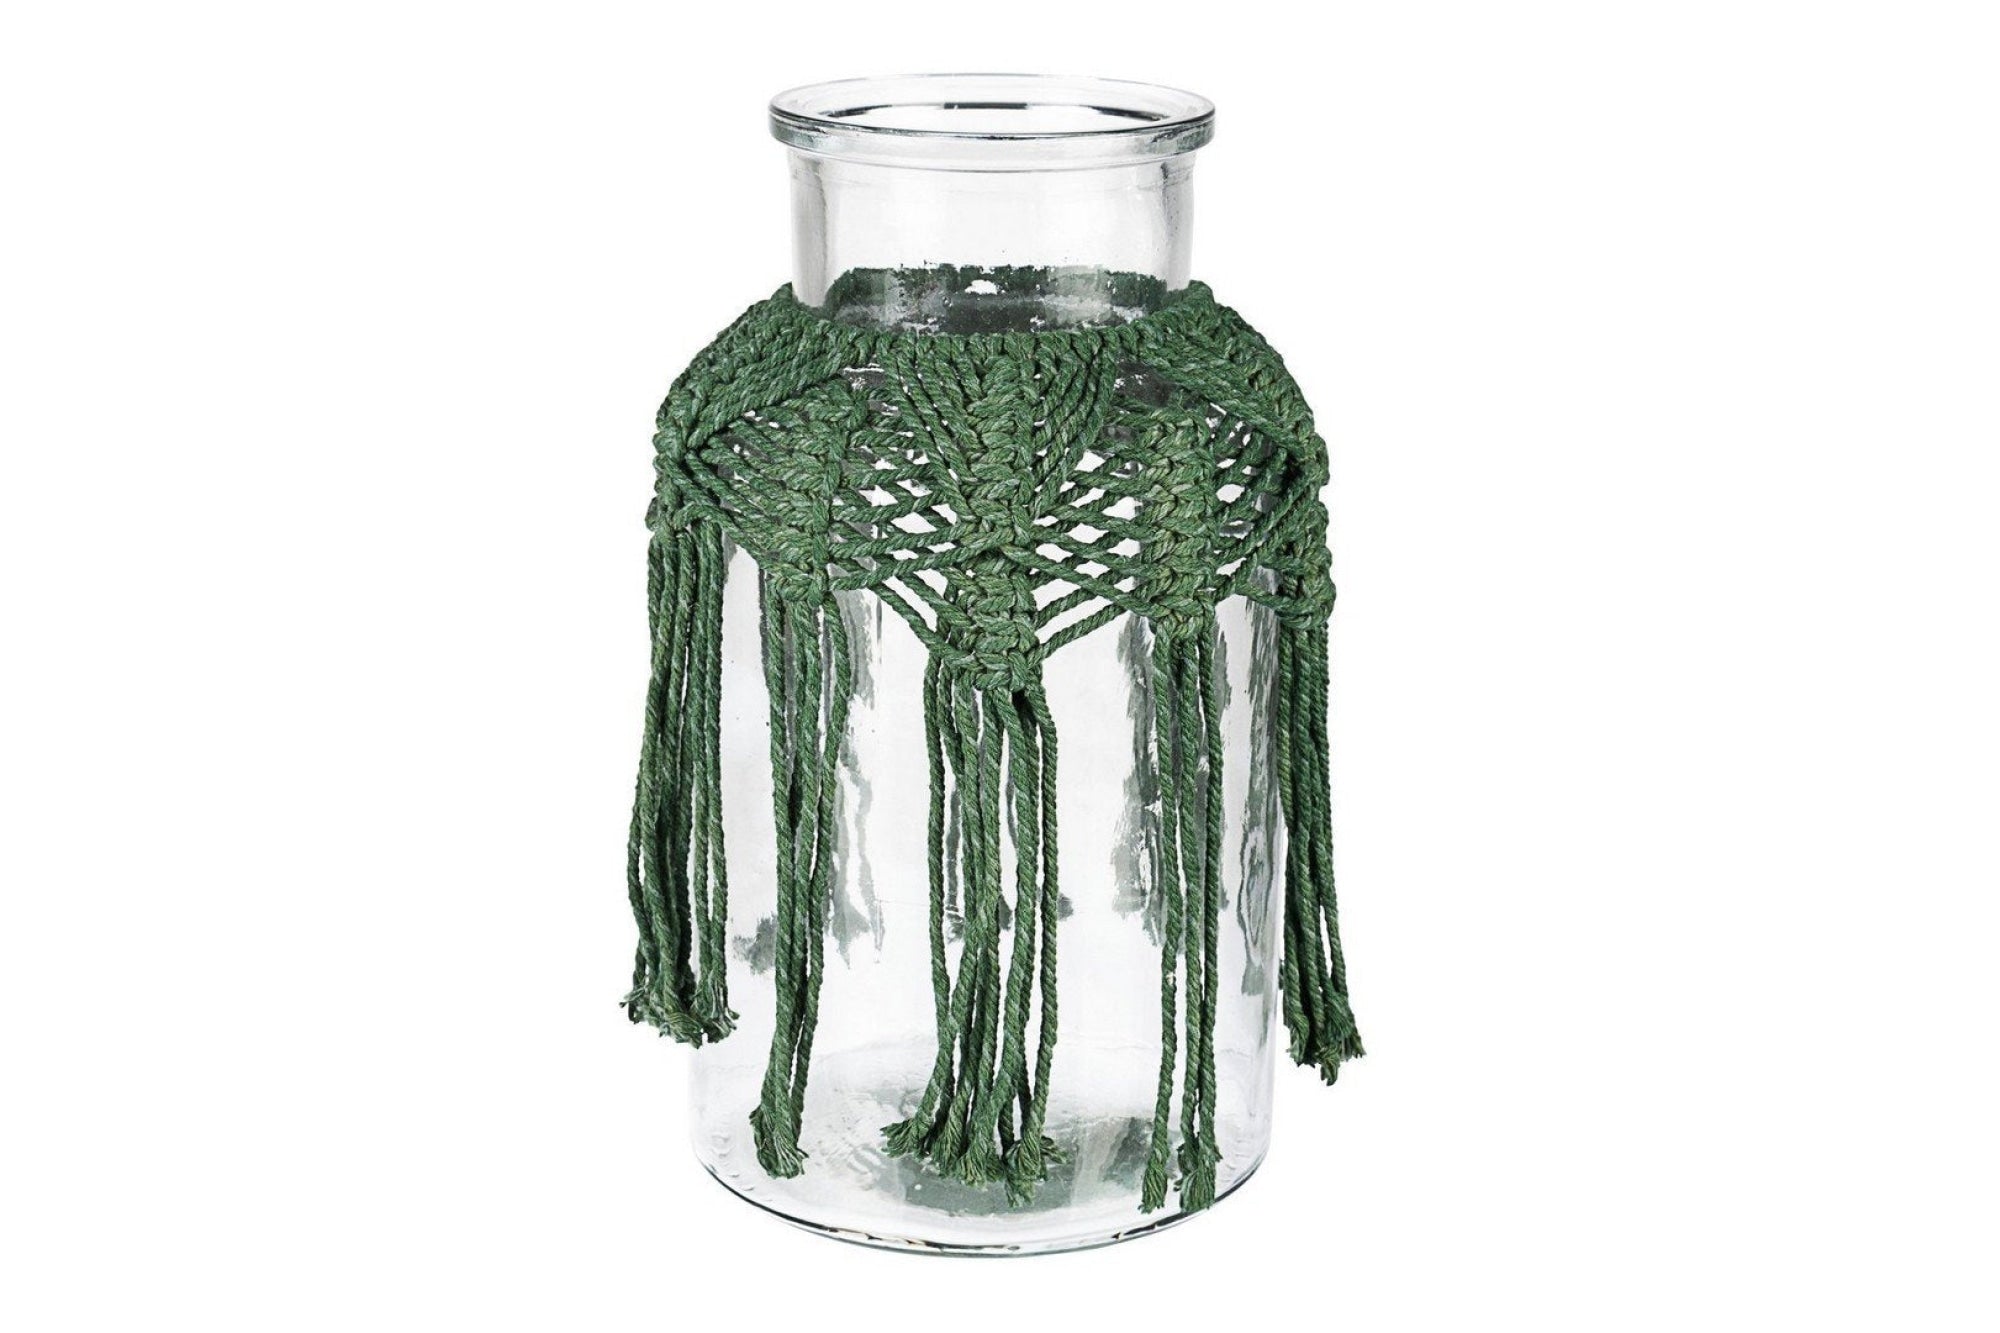 Üveg tároló - PERUVIAN zöld 100% pamut üveg tároló